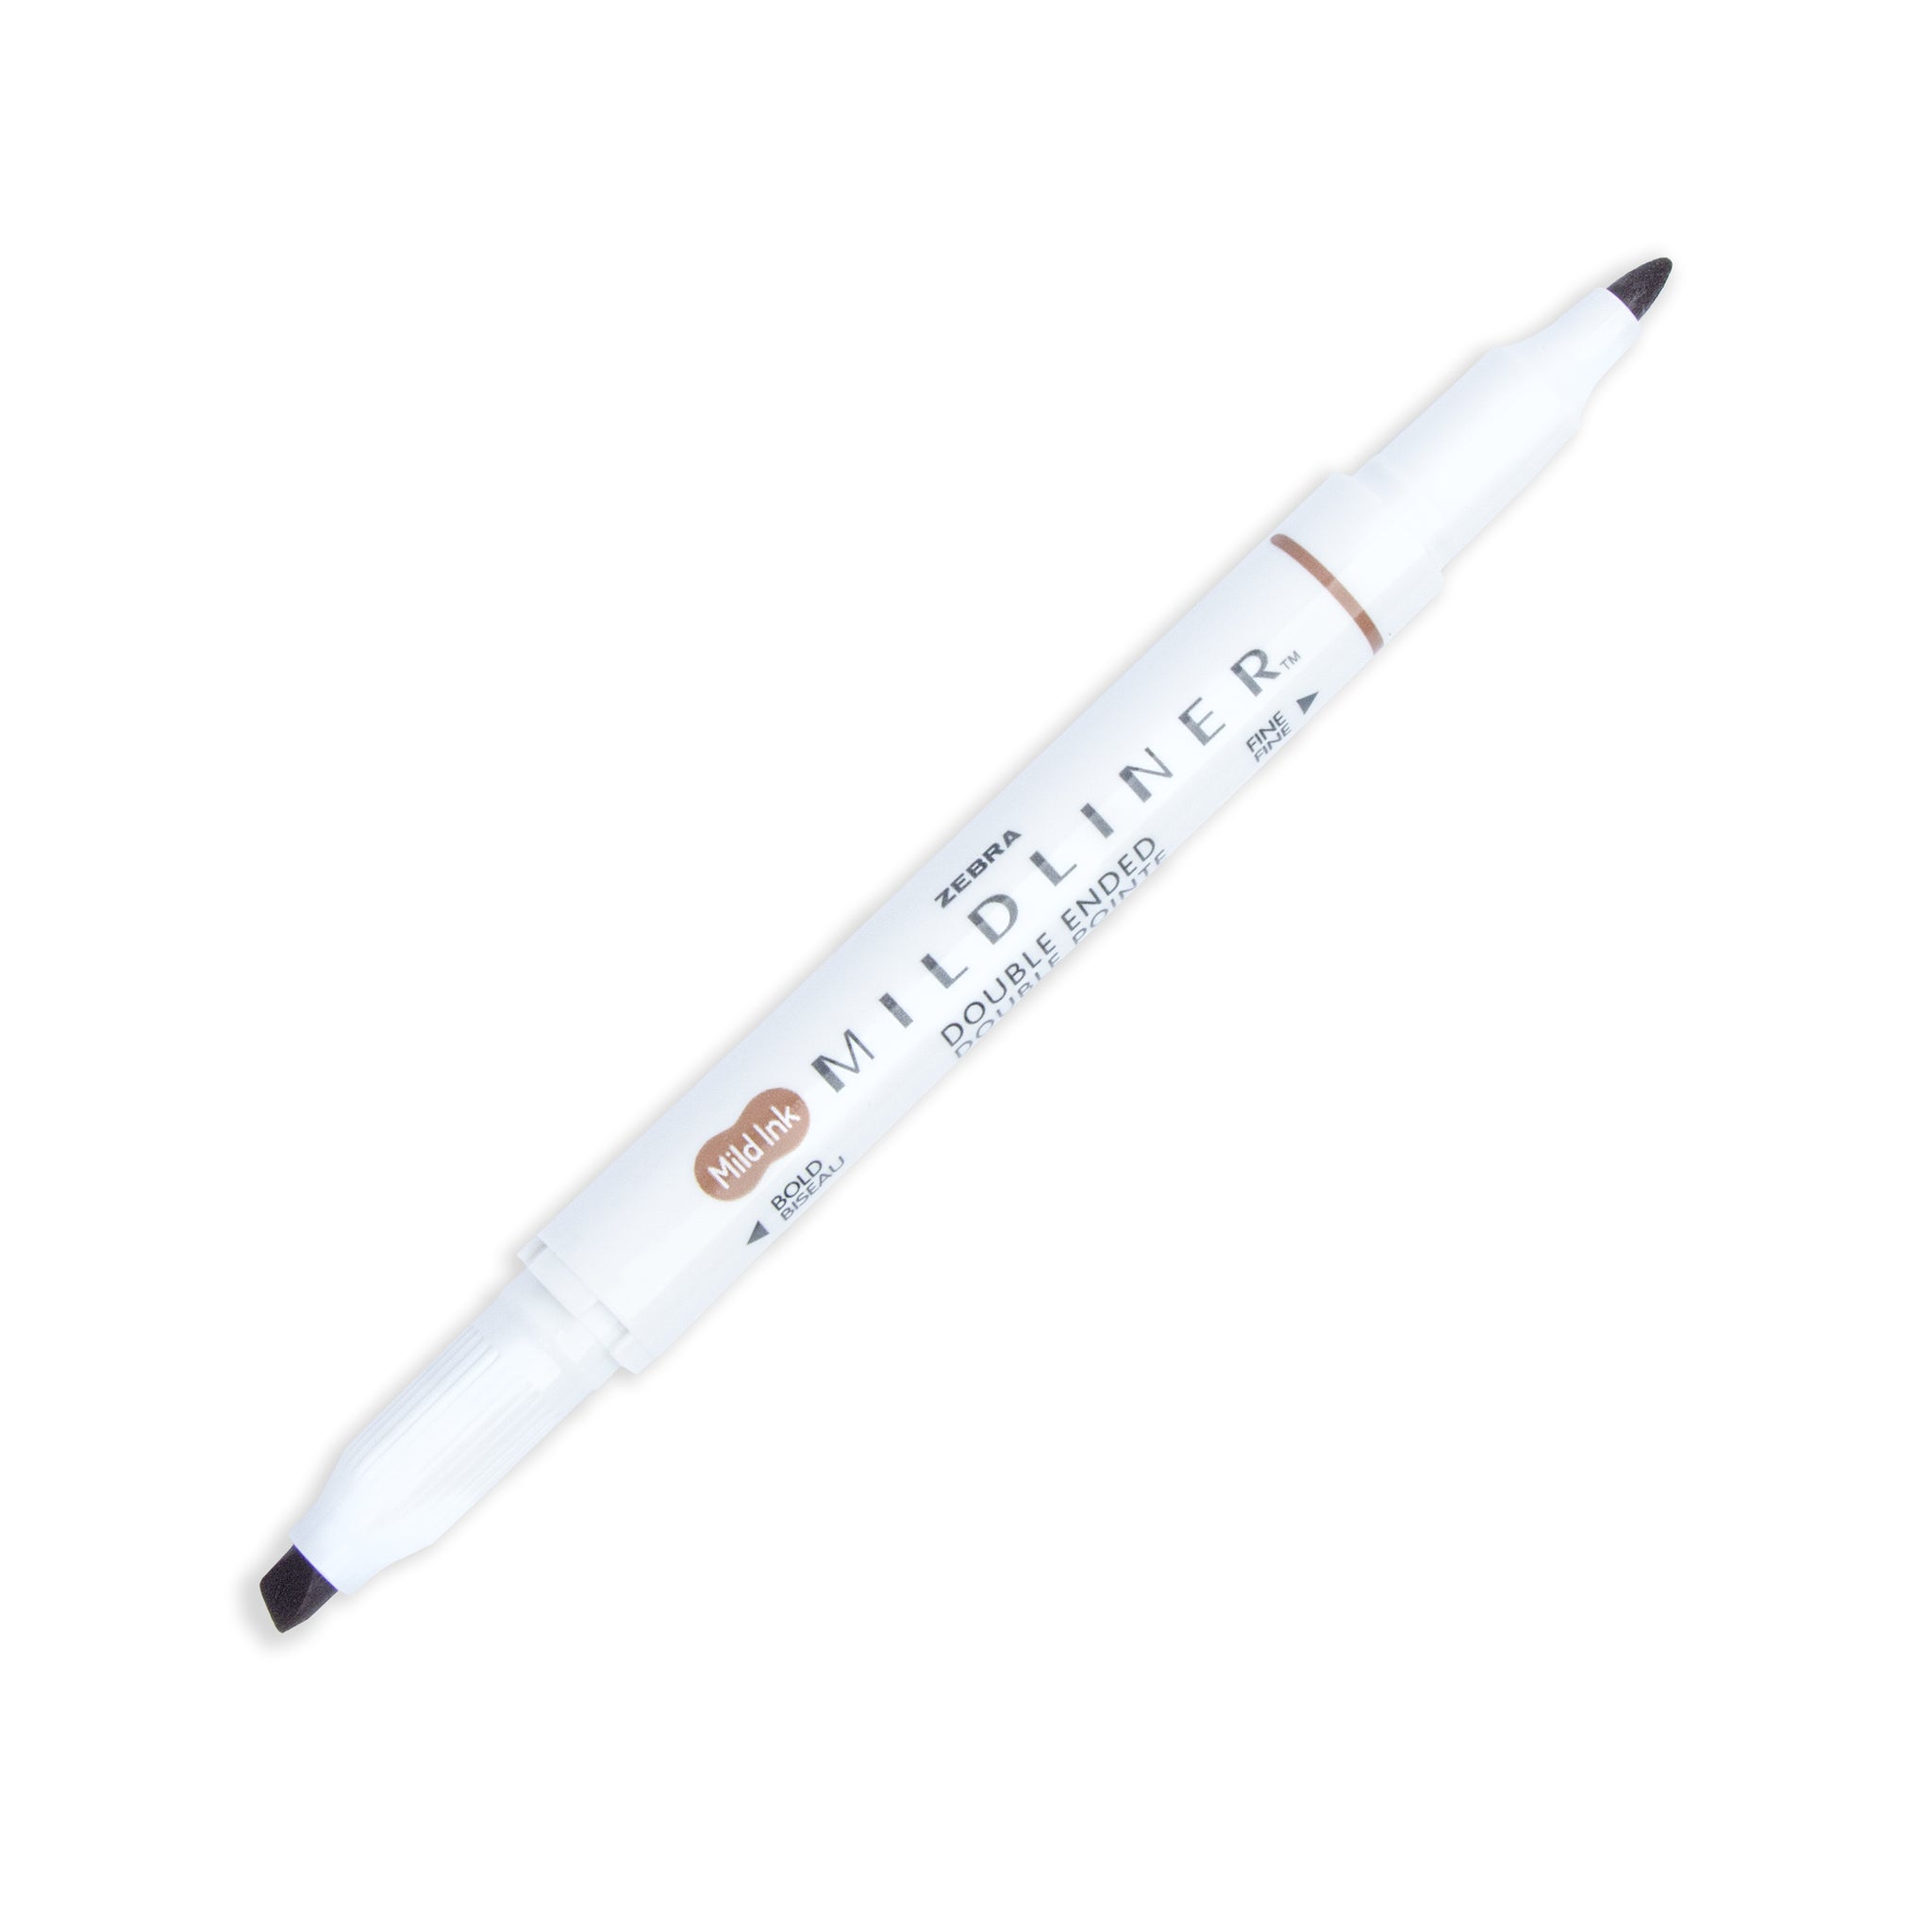 Zebra Mildliner Brush Pens 15 Colors Double Tip, Brush Lettering Pens,  Brush Calligraphy Pens, Bujo Pens, Planner Highlighter -  Finland